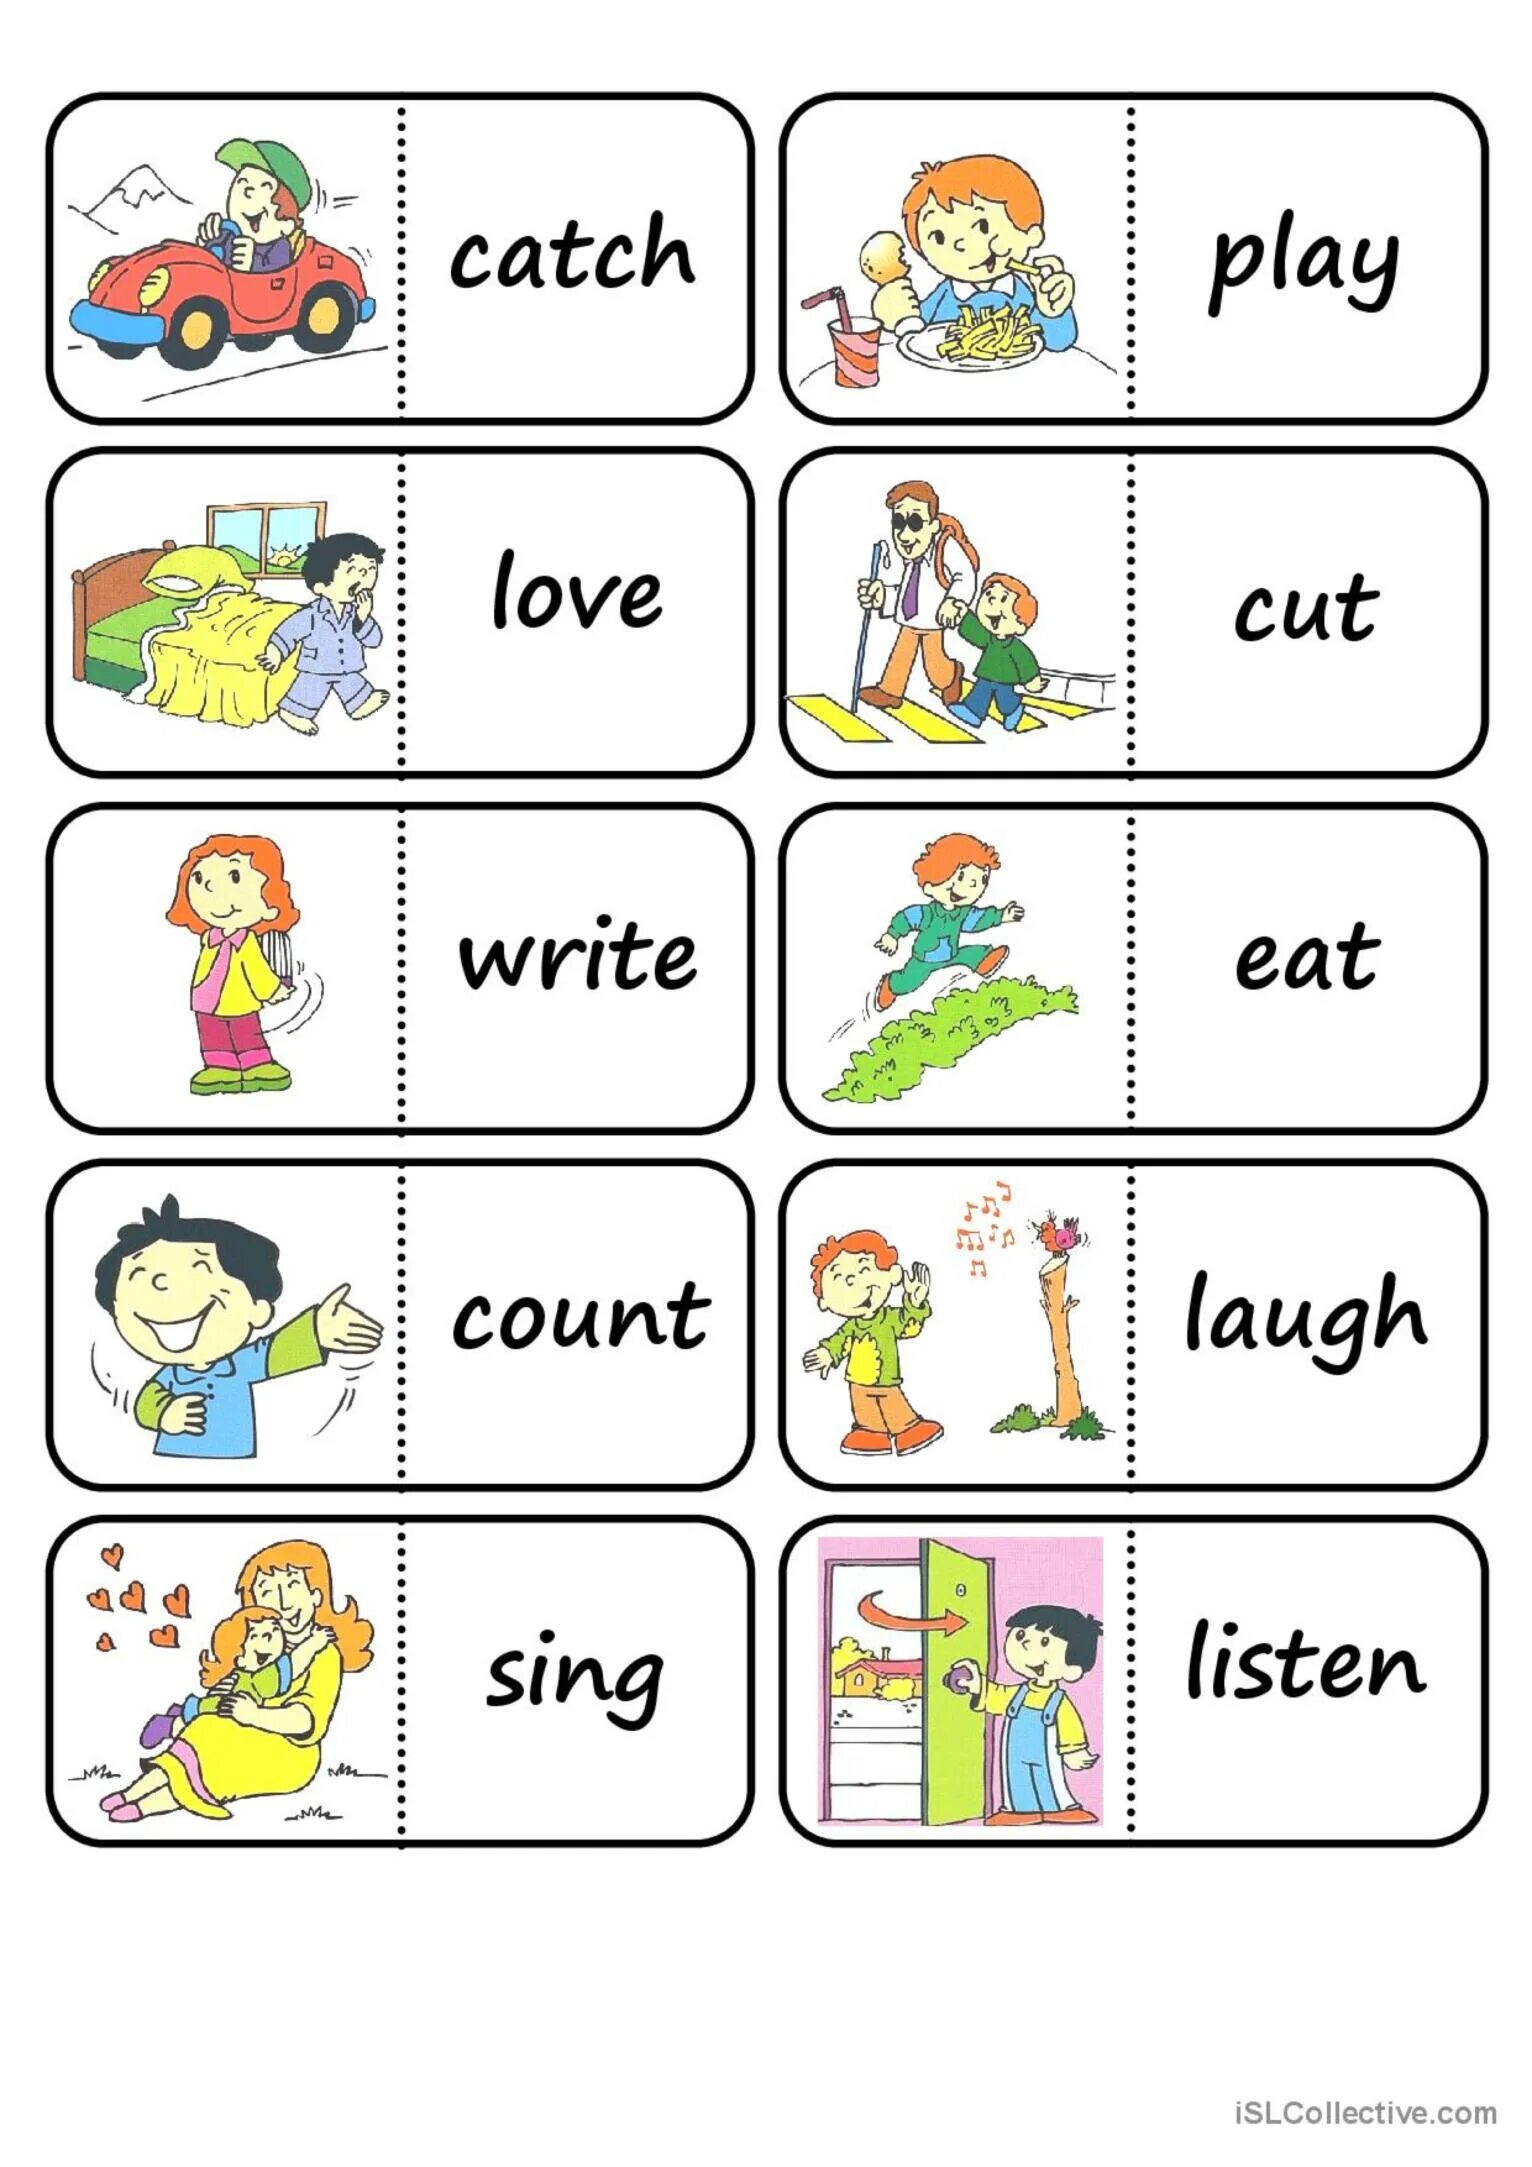 Английский для детей карточки с глаголами. Глаголы в английском языке для детей. Карточки Actions для детей. Глаголы на английском для детей. Actions rules